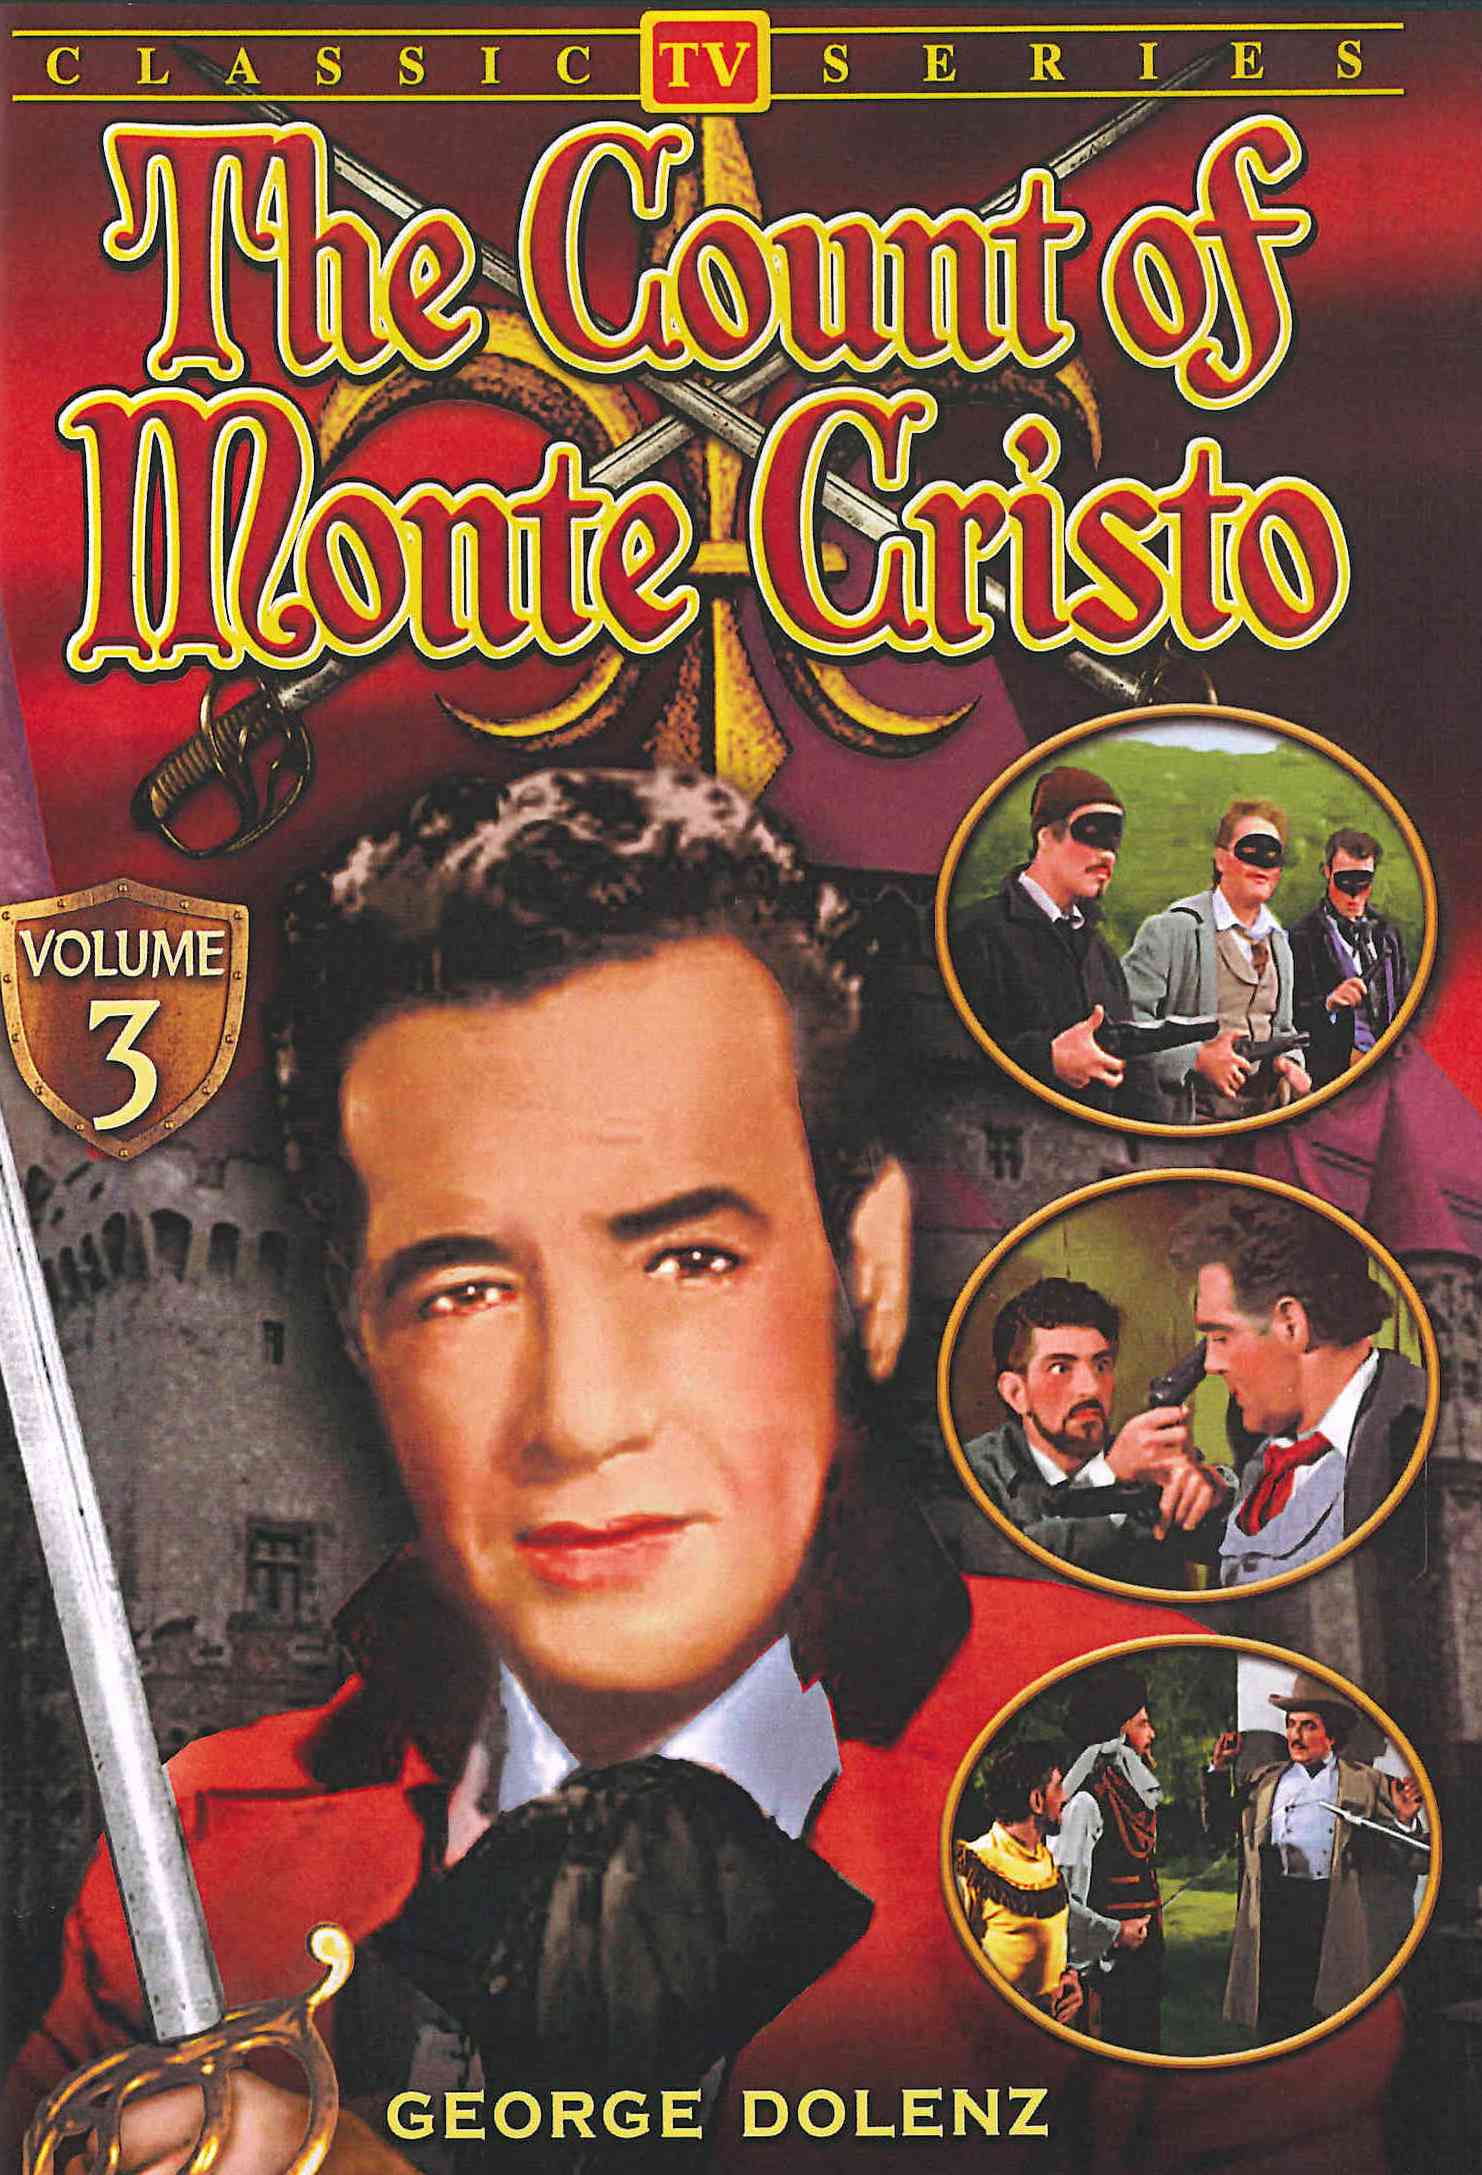 Count of Monte Cristo: Volume 3 cover art